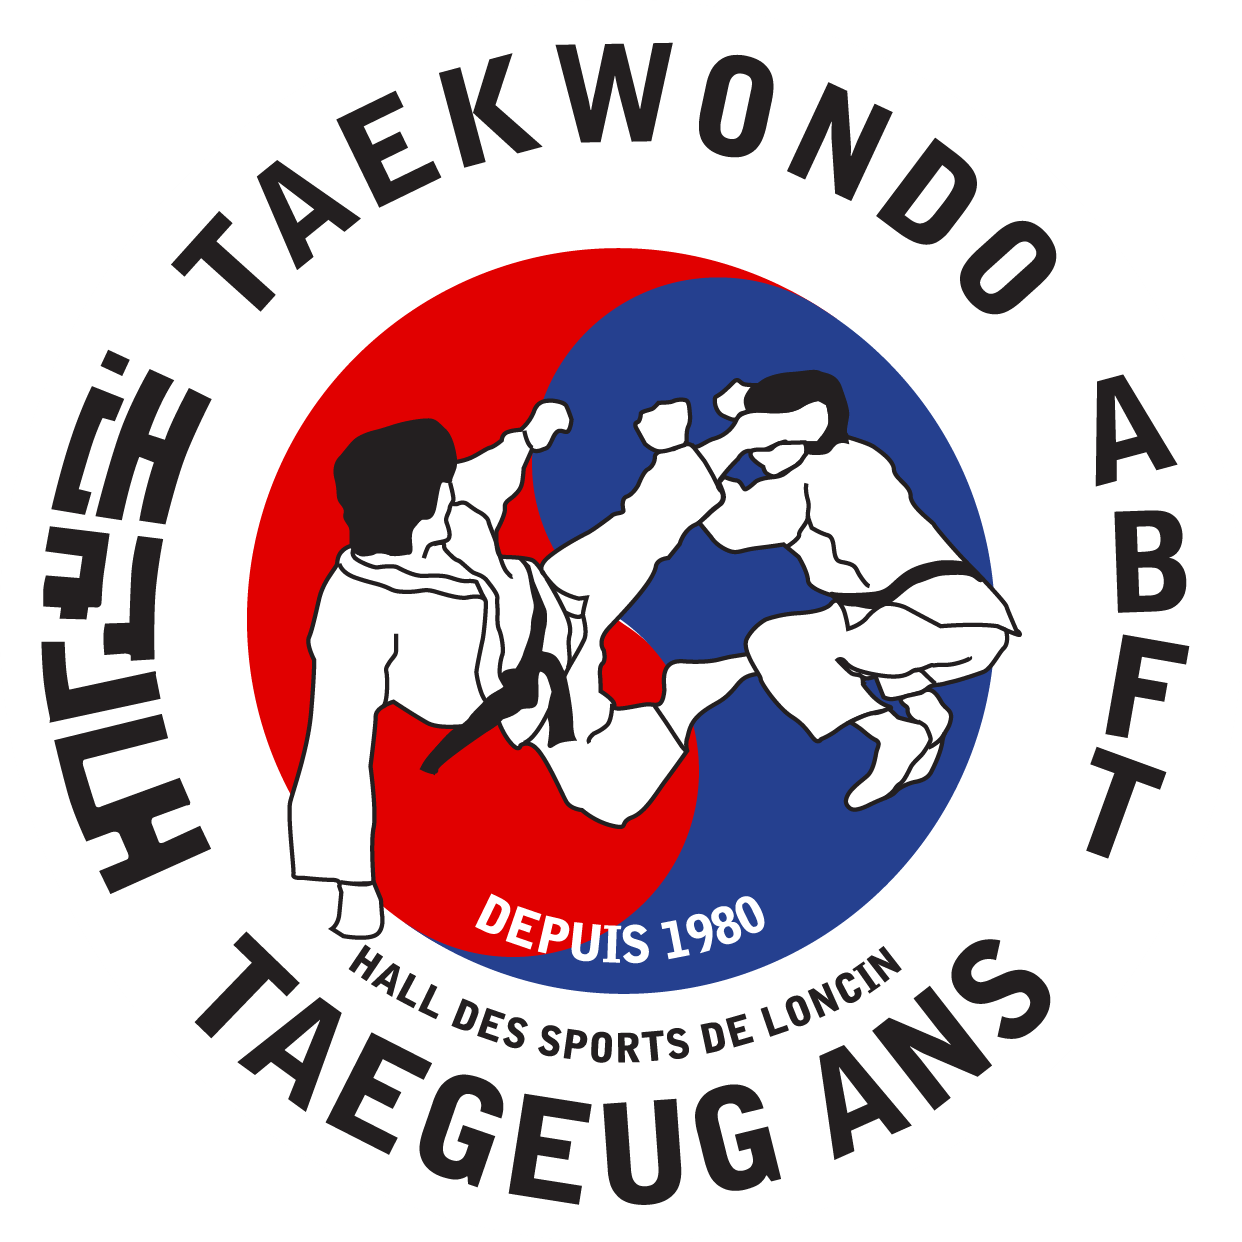 Taekwondo Taegeug Ans